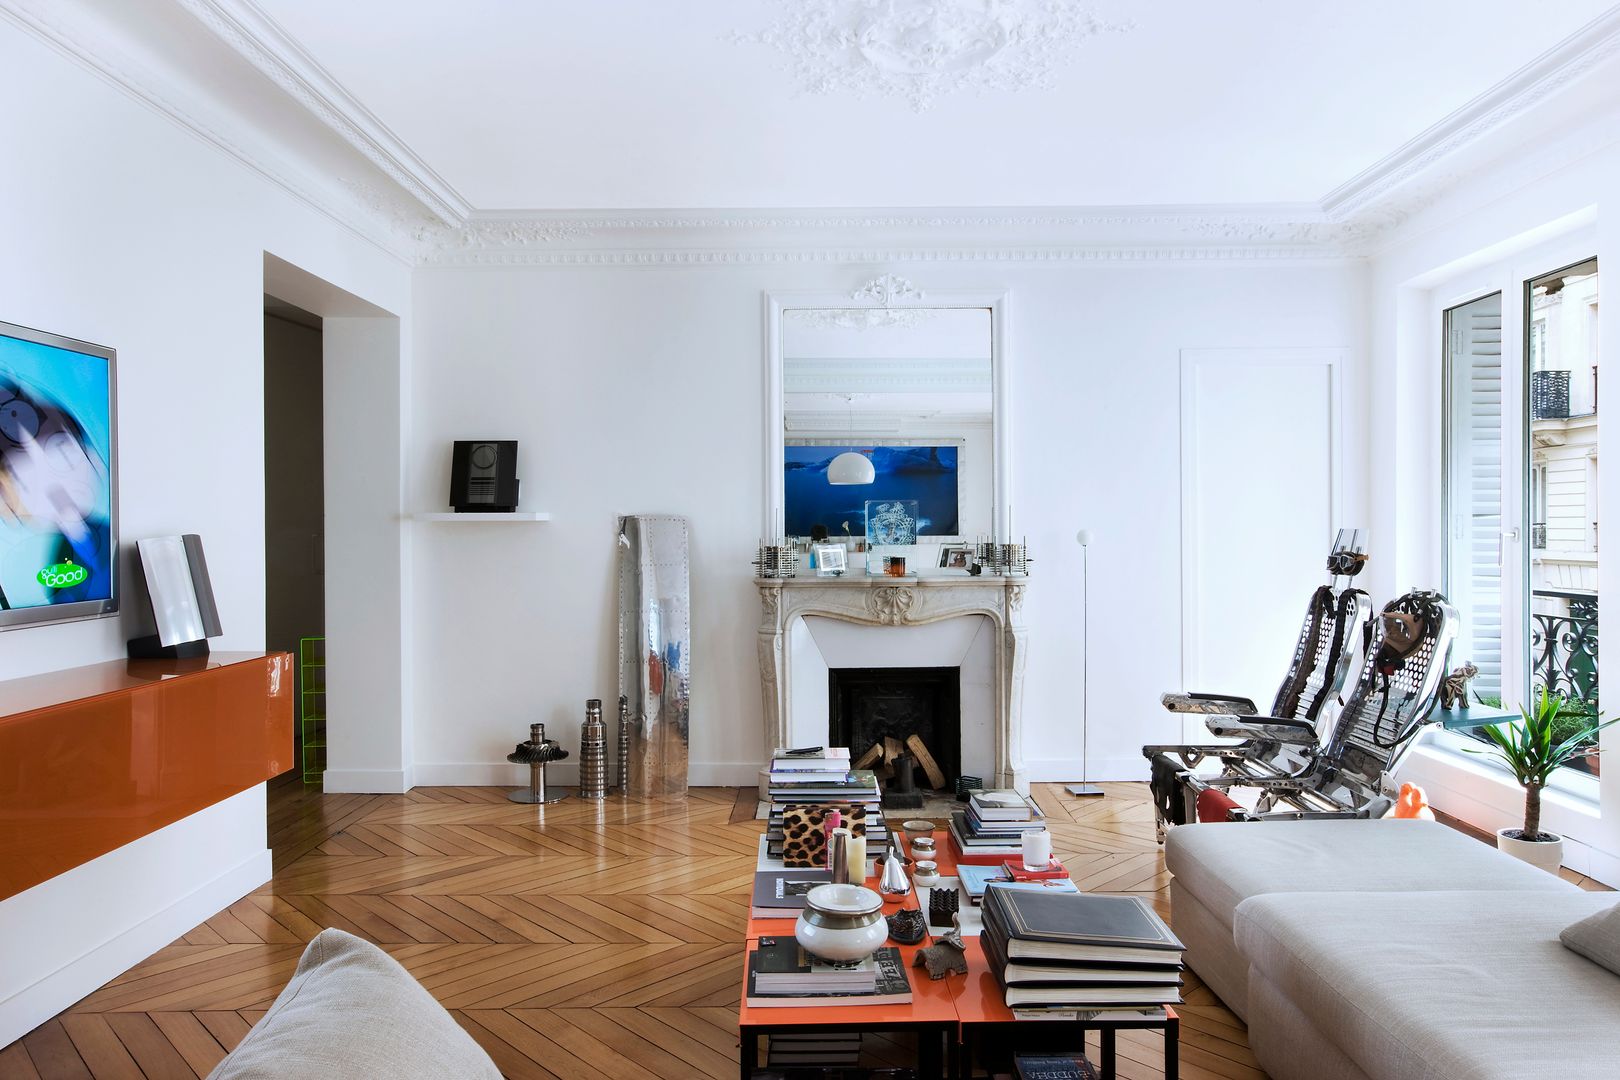 Appartement 140m², blackStones blackStones Livings de estilo ecléctico